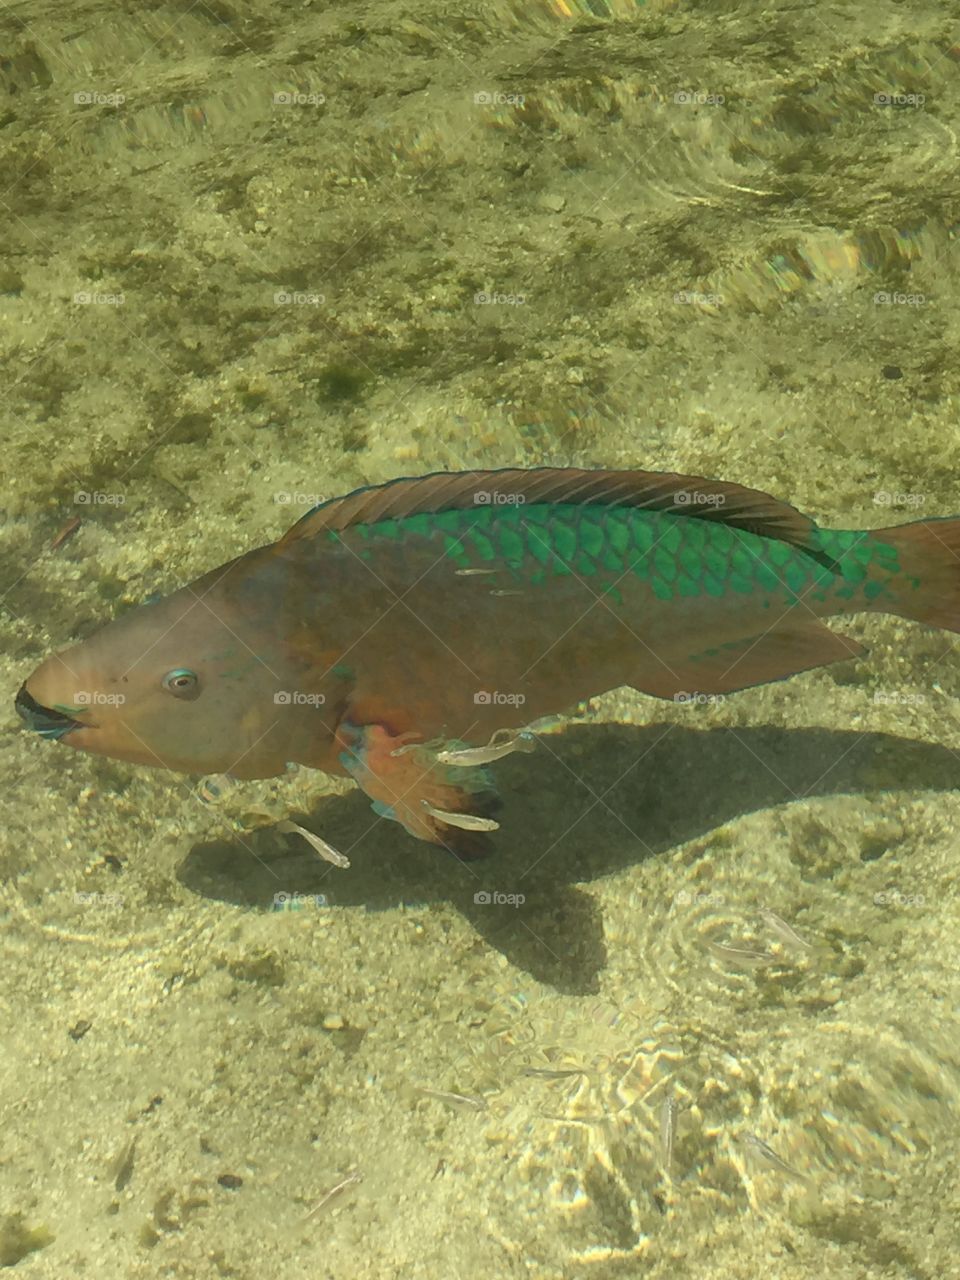 Parrotfish close up